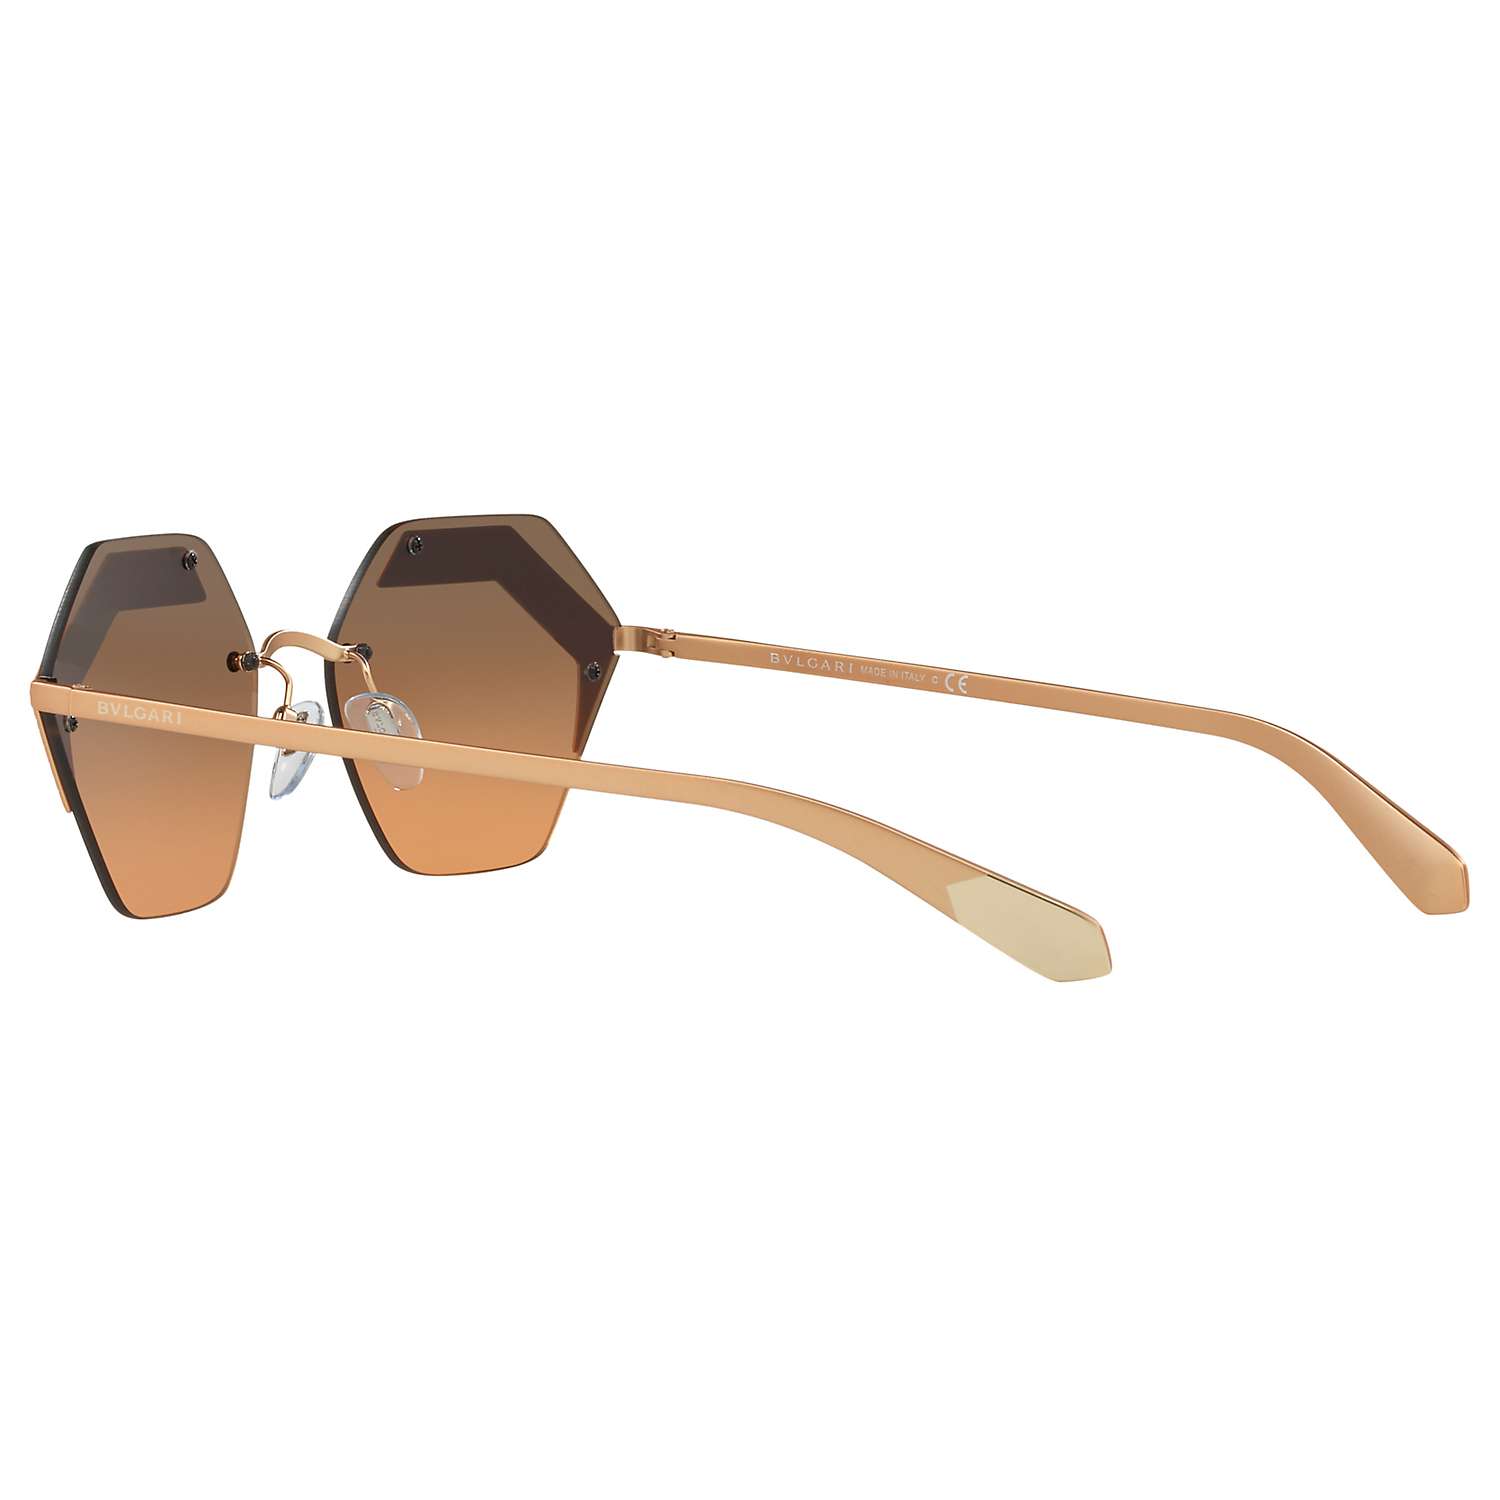 Buy BVLGARI BV6103 Hexagonal Sunglasses, Rose Gold/Grey Gradient Online at johnlewis.com